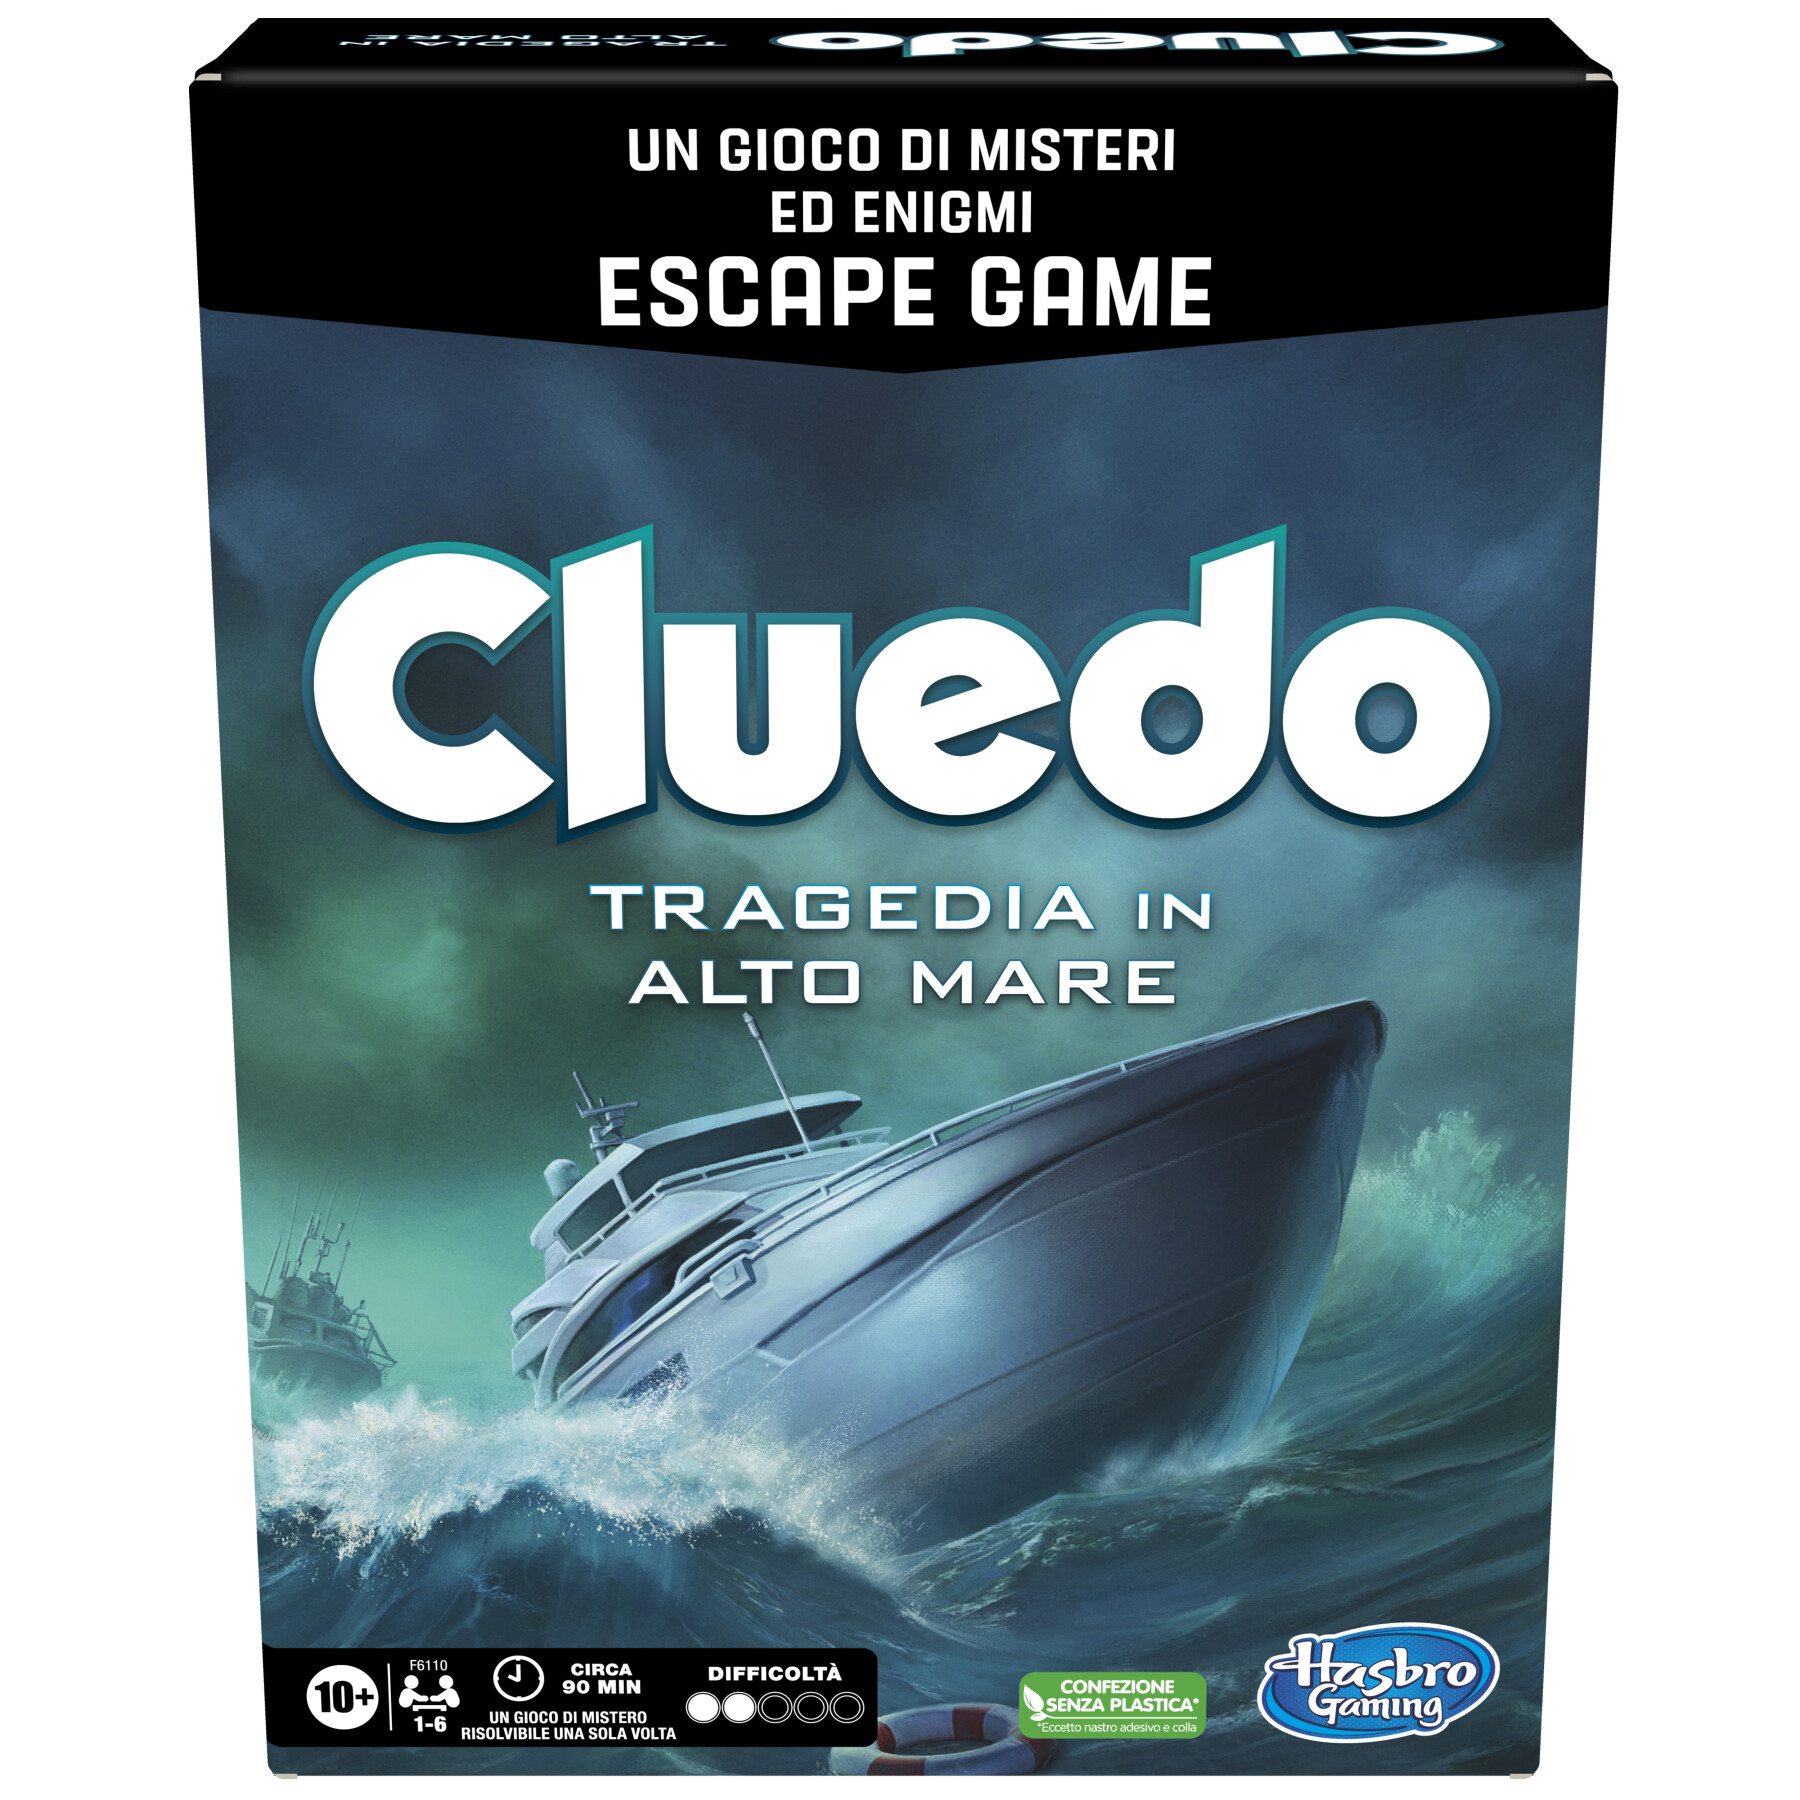 Cluedo escape - tragedia in alto mare, un gioco di misteri ed enigmi in versione escape game, gioco cooperativo per le famiglie - HASBRO GAMING